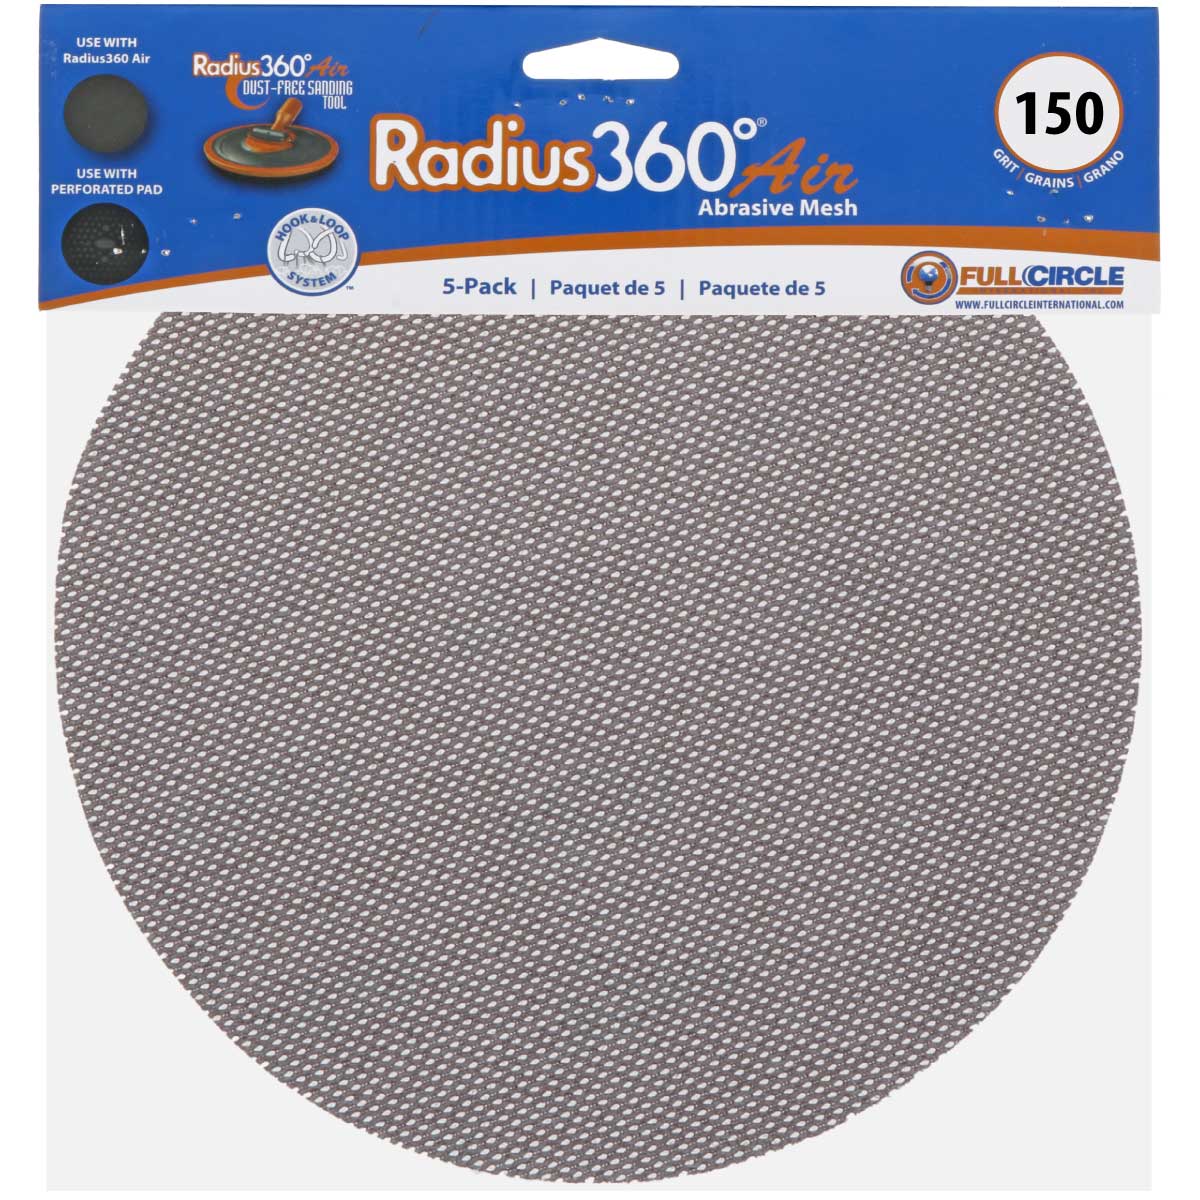 Radius 360 Mesh Abrasive 150